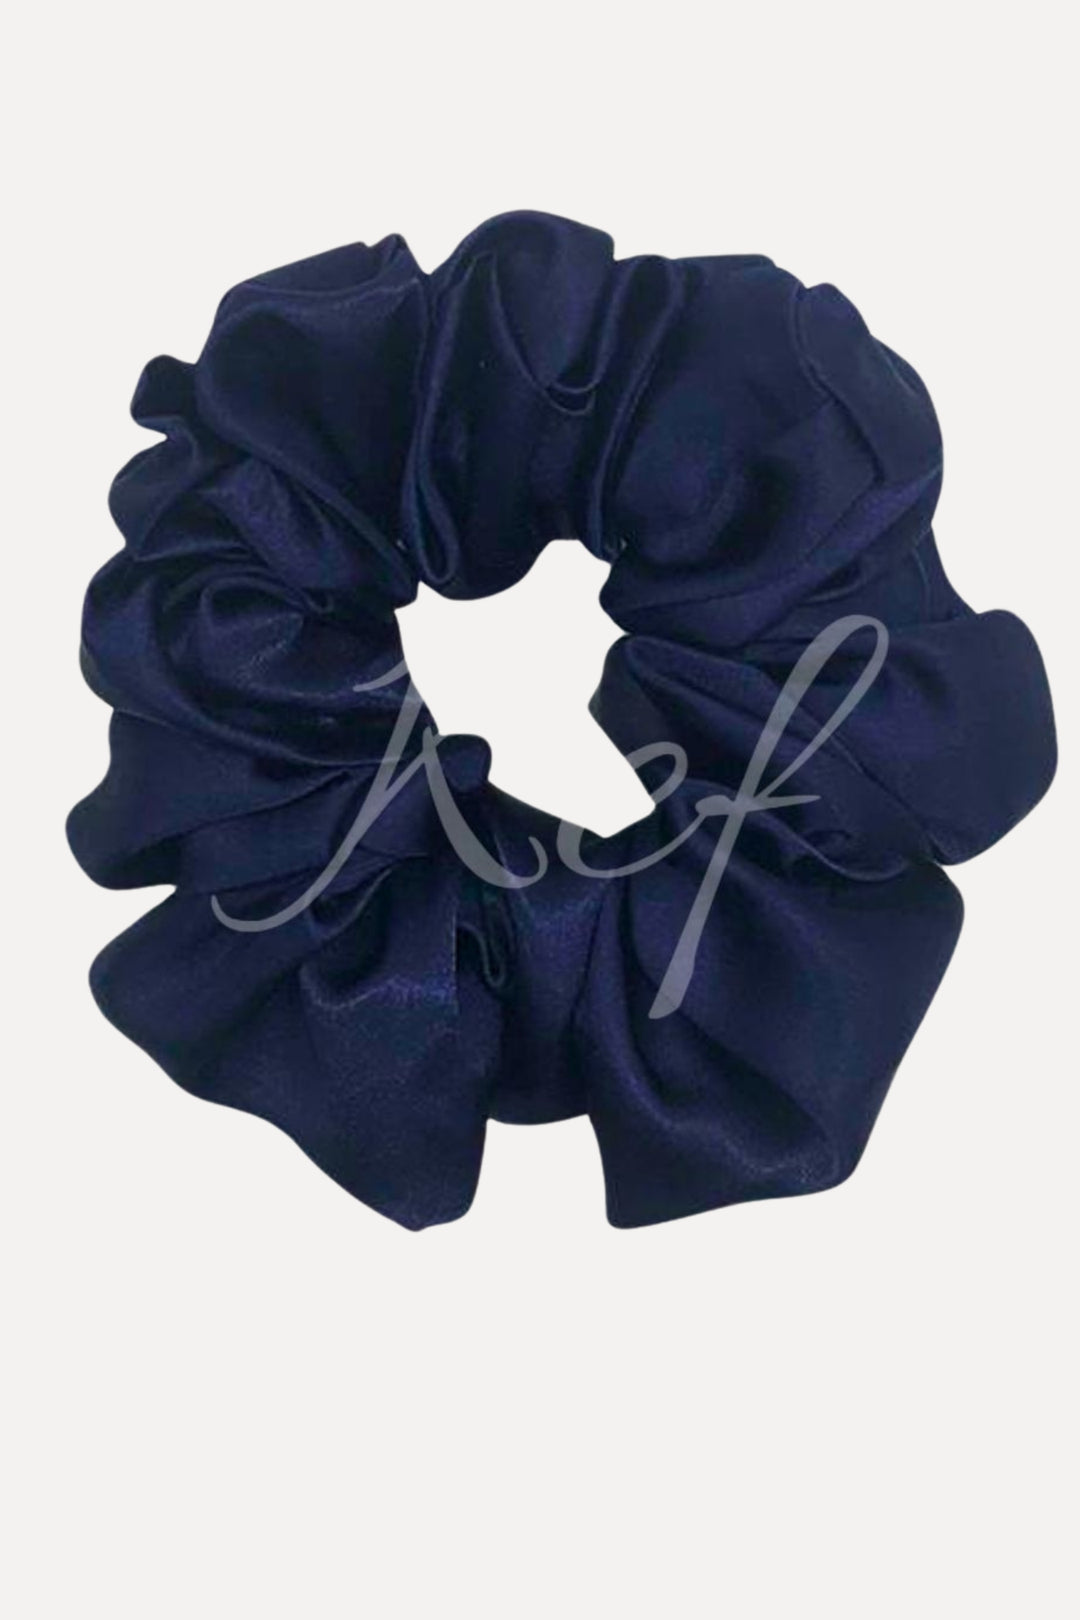 Silk Scrunchie - Navy Blue